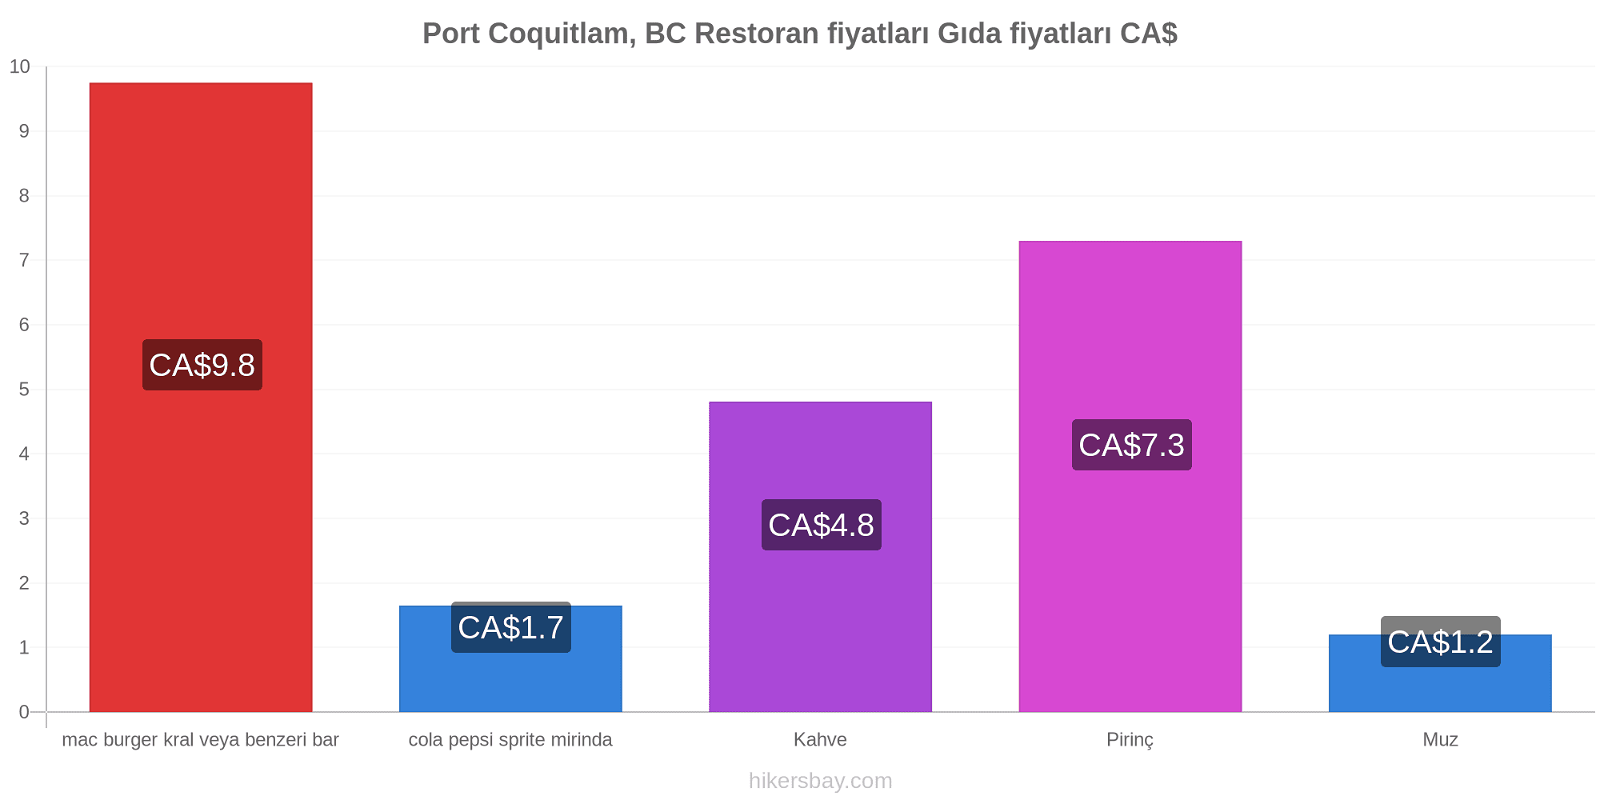 Port Coquitlam, BC fiyat değişiklikleri hikersbay.com